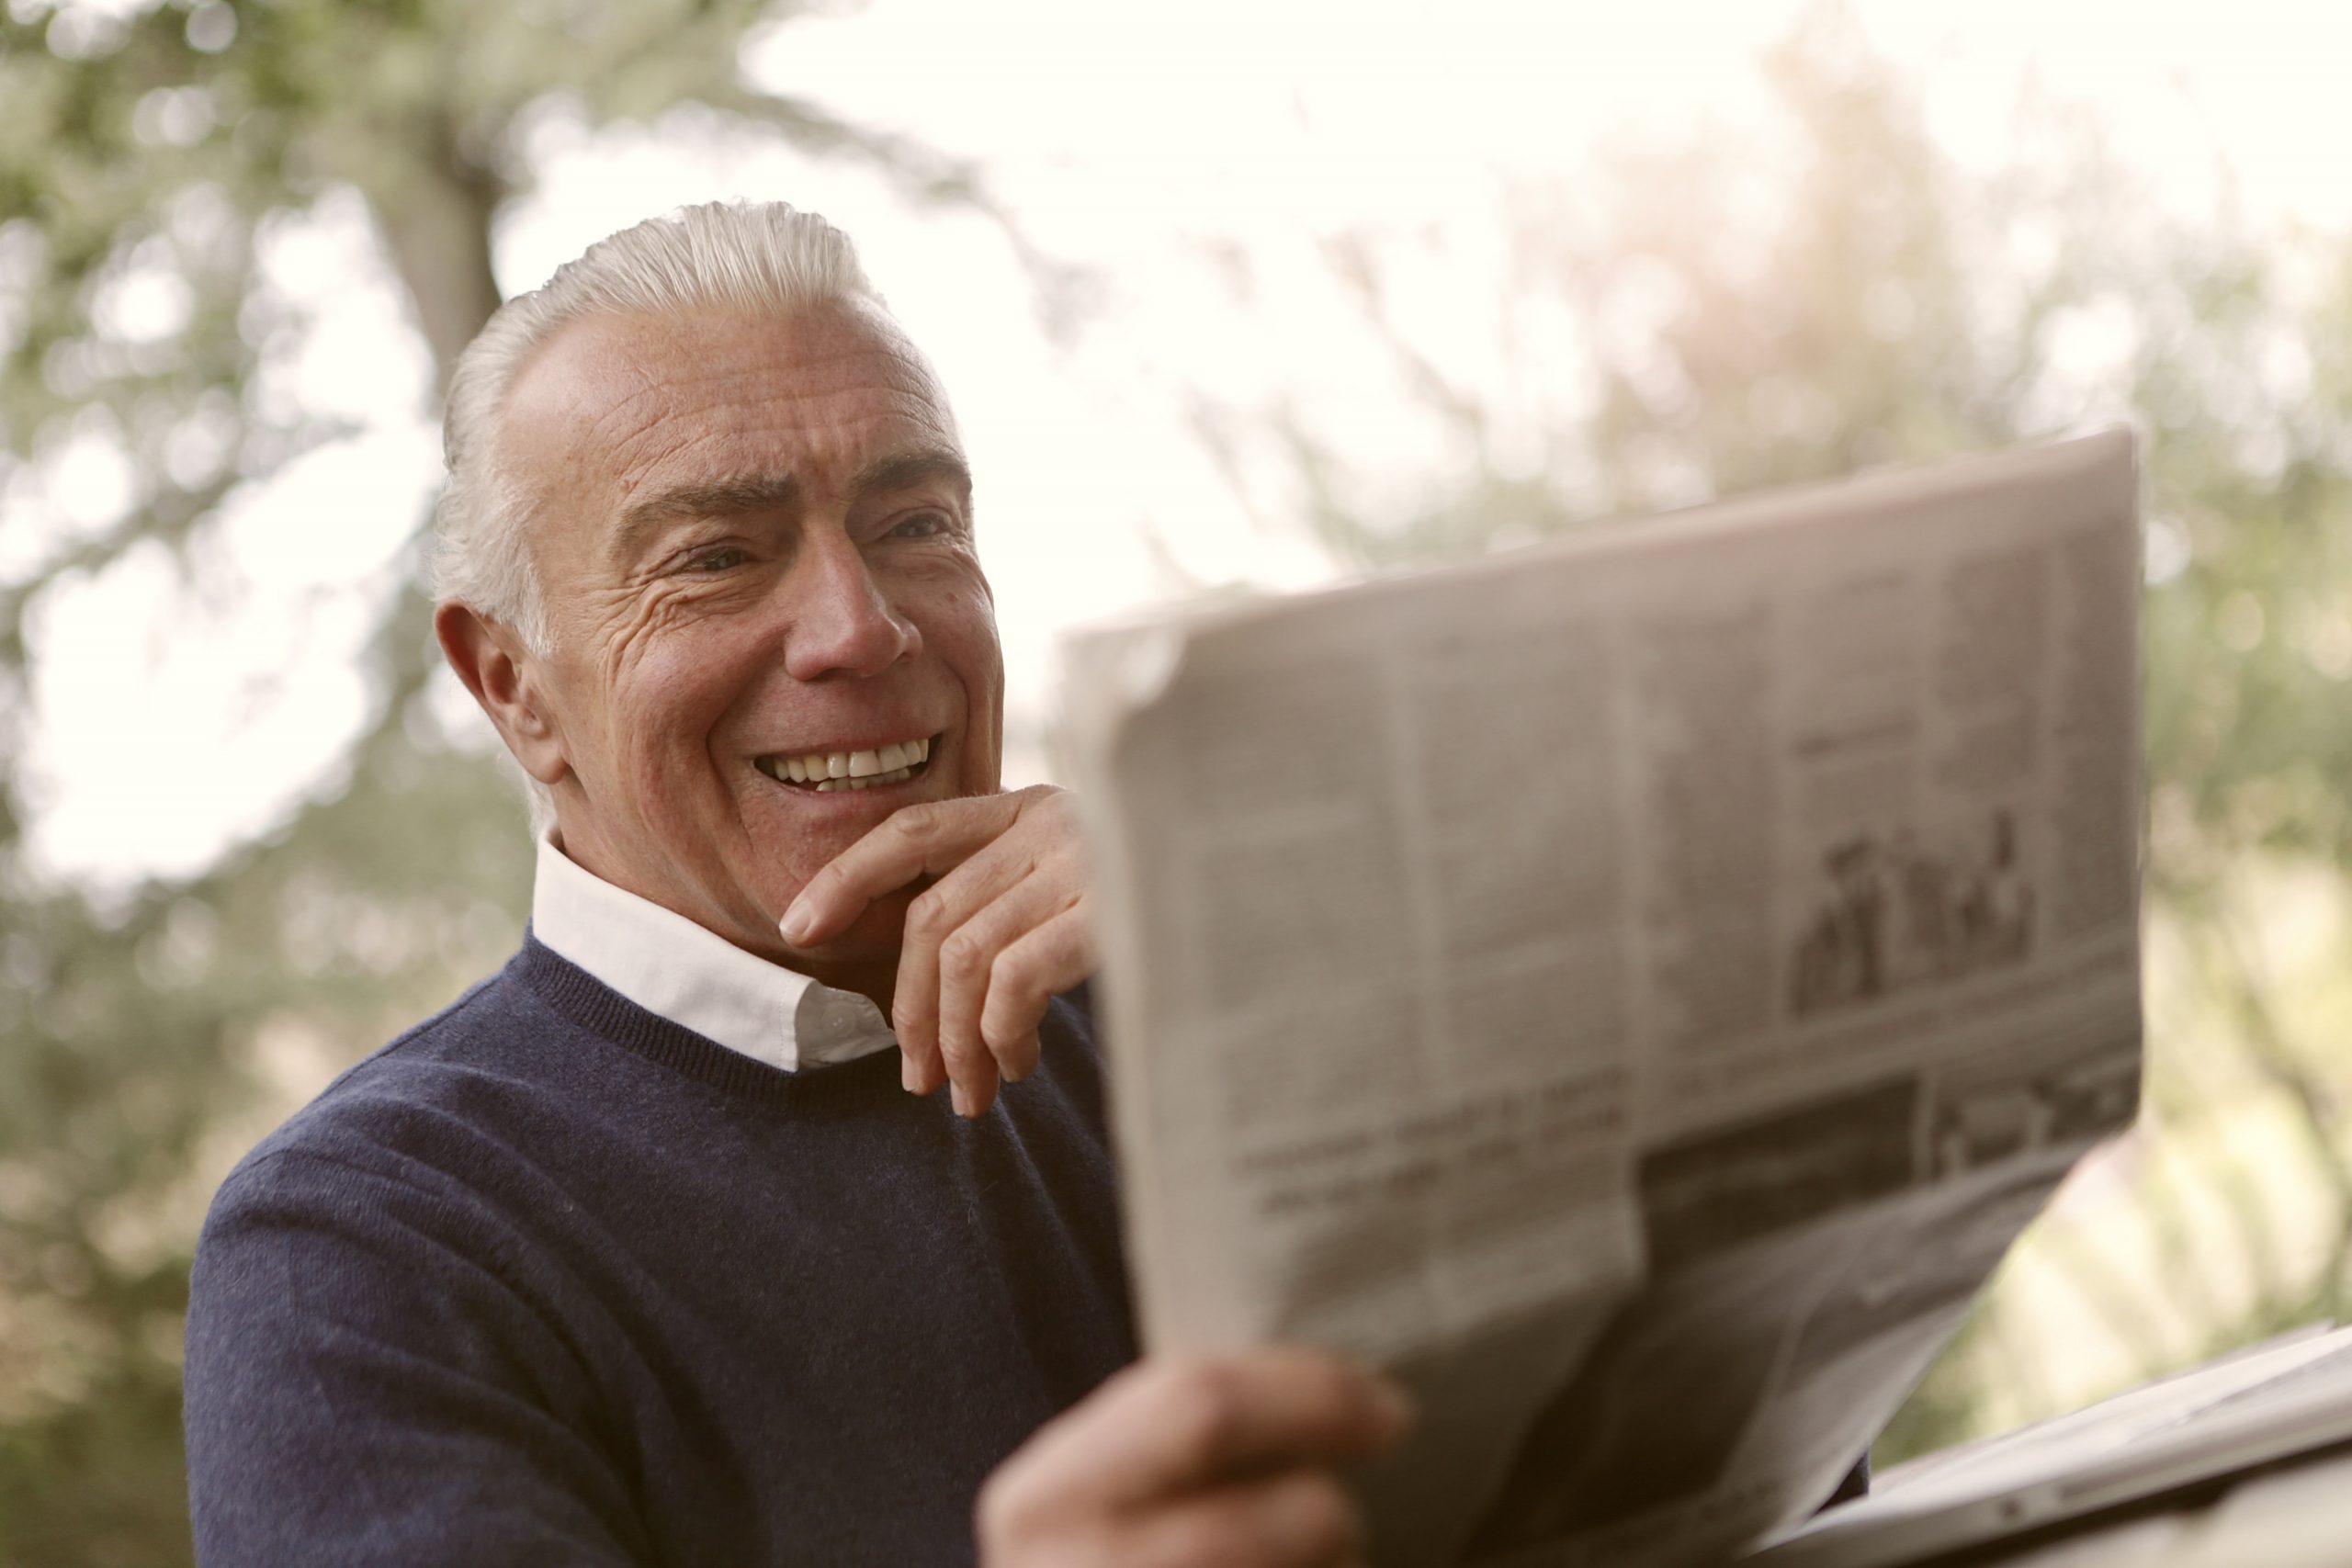 A man reading a newspaper